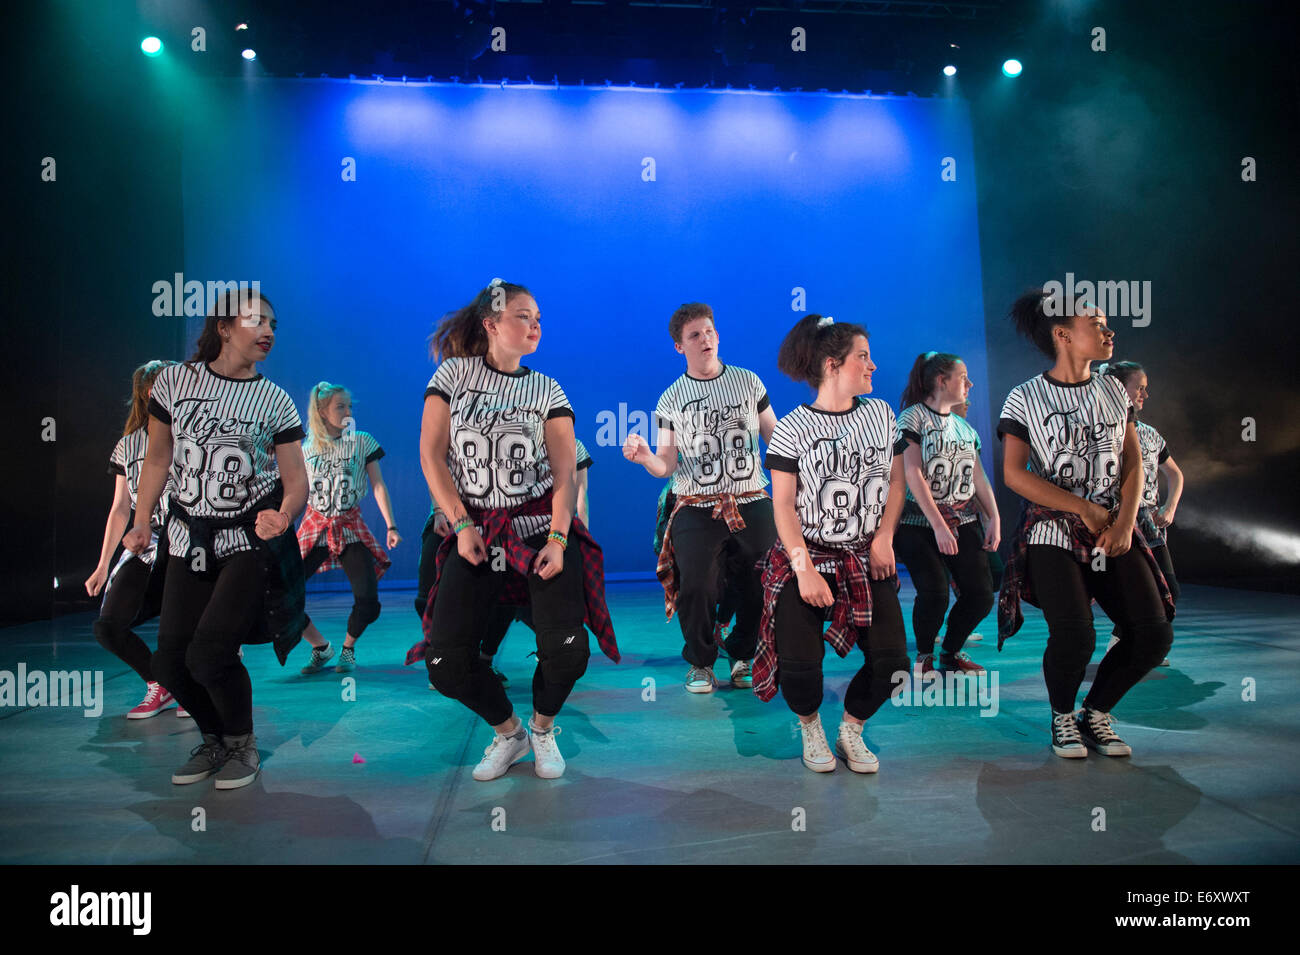 Les adolescents et adolescentes danser sur scène dans une école de danse présentera les performances Aberystwyth Arts Centre Wales UK Banque D'Images